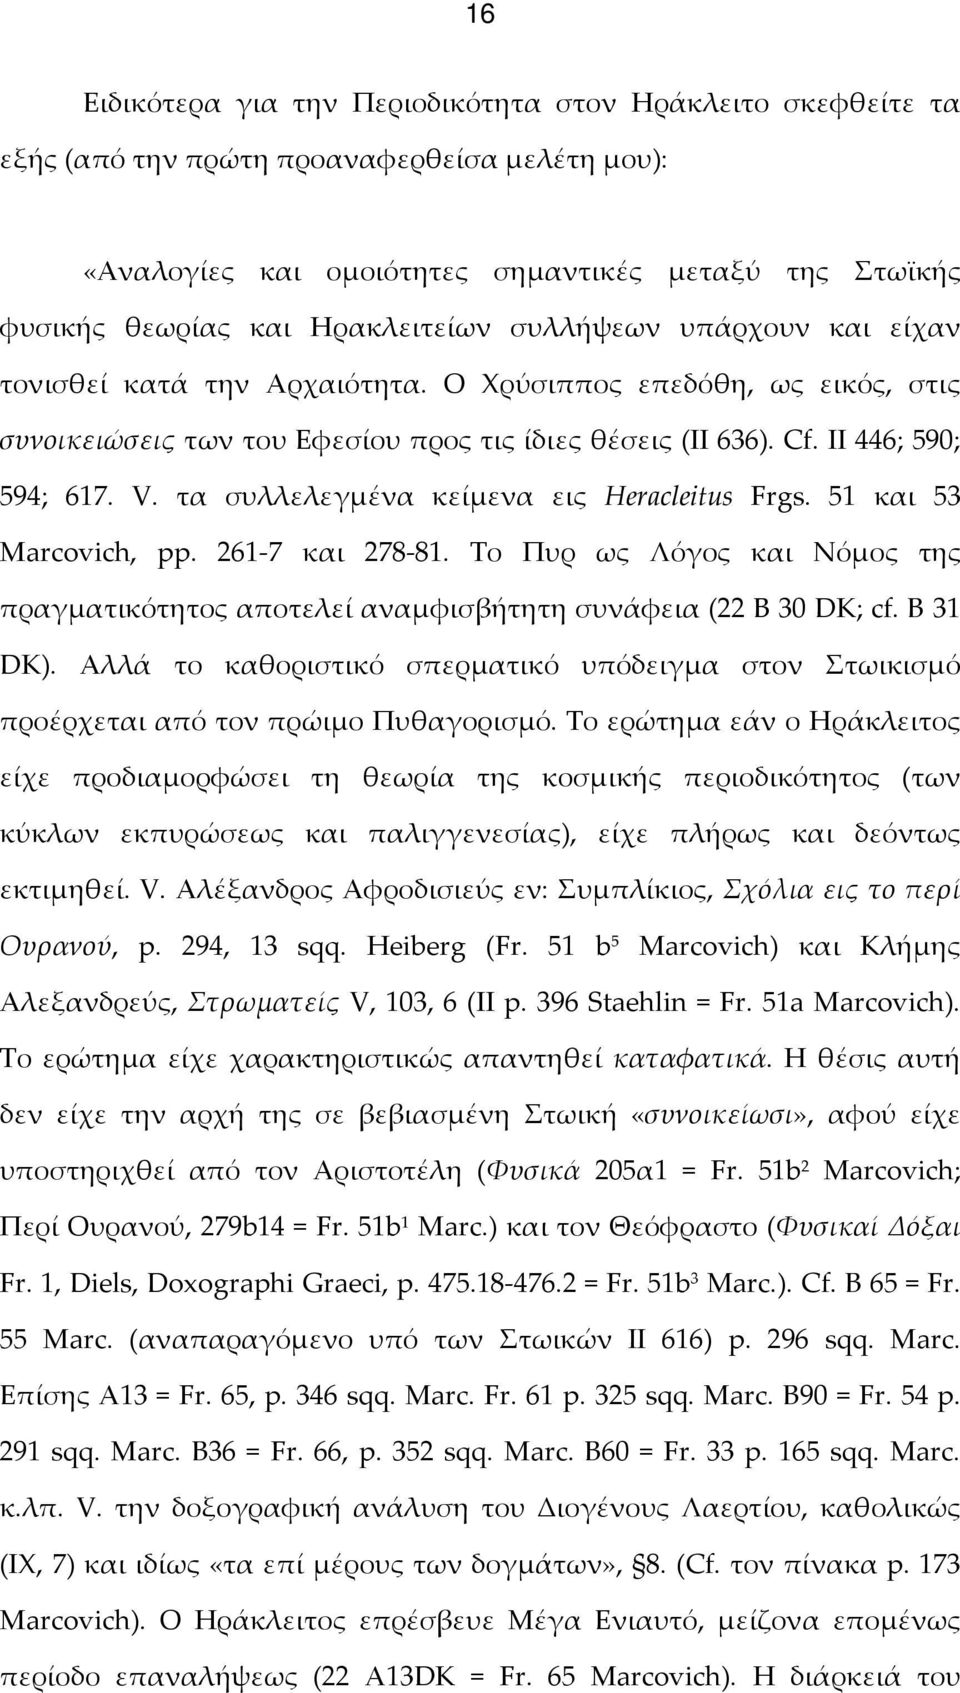 τα συλλελεγμένα κείμενα εις Heracleitus Frgs. 51 και 53 Marcovich, pp. 261-7 και 278-81. Το Πυρ ως Λόγος και Νόμος της πραγματικότητος αποτελεί αναμφισβήτητη συνάφεια (22 Β 30 DK; cf. B 31 DK).